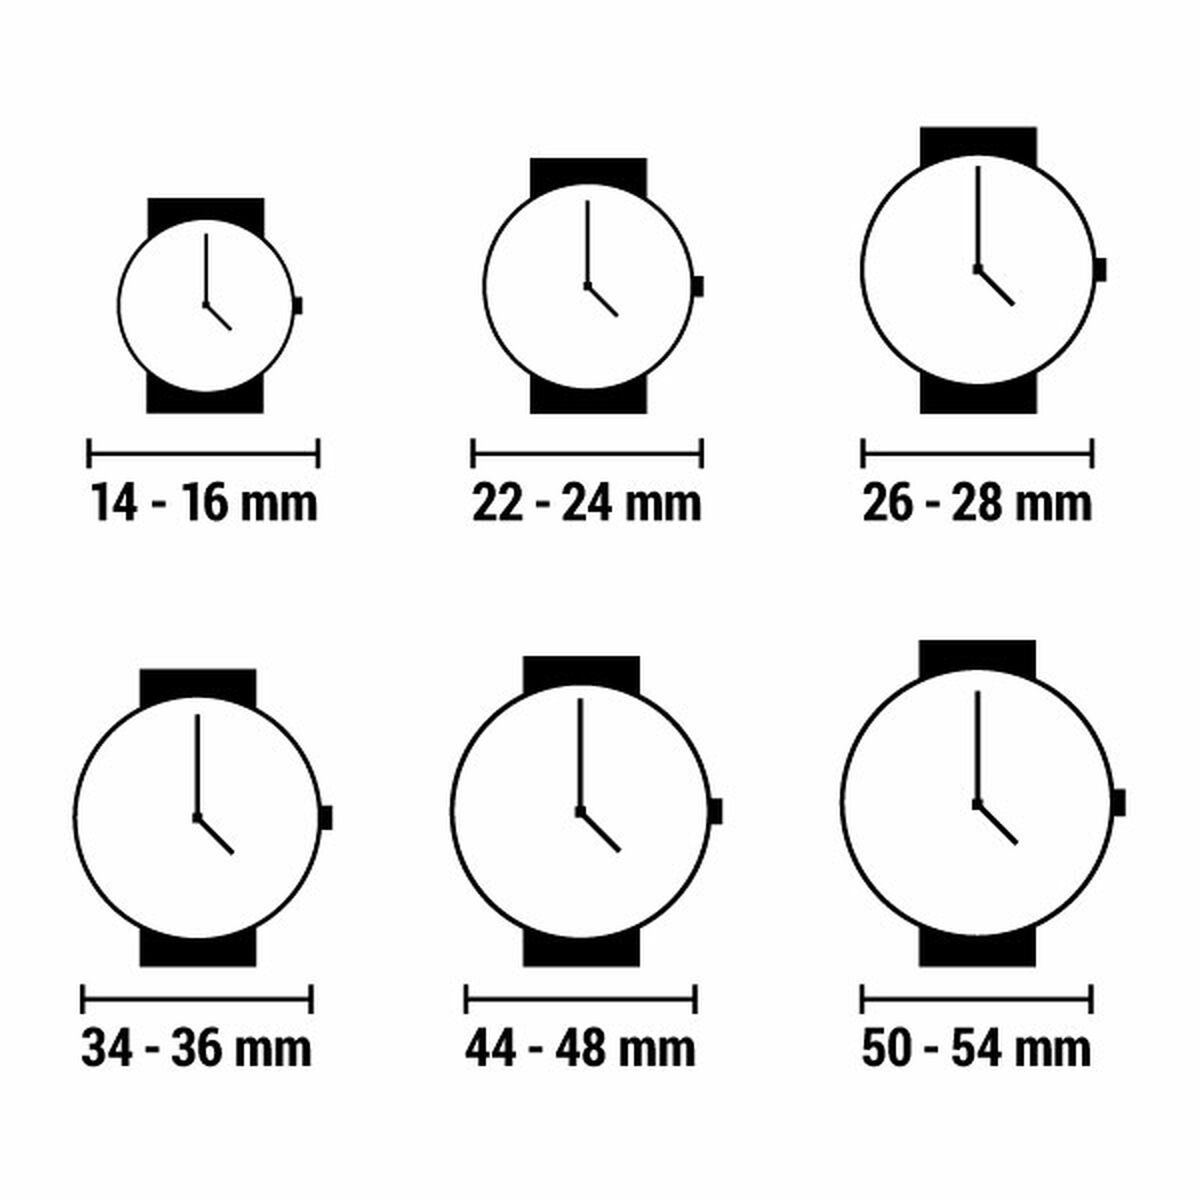 Horloge Dames Viceroy 461092-03 (Ø 32 mm)